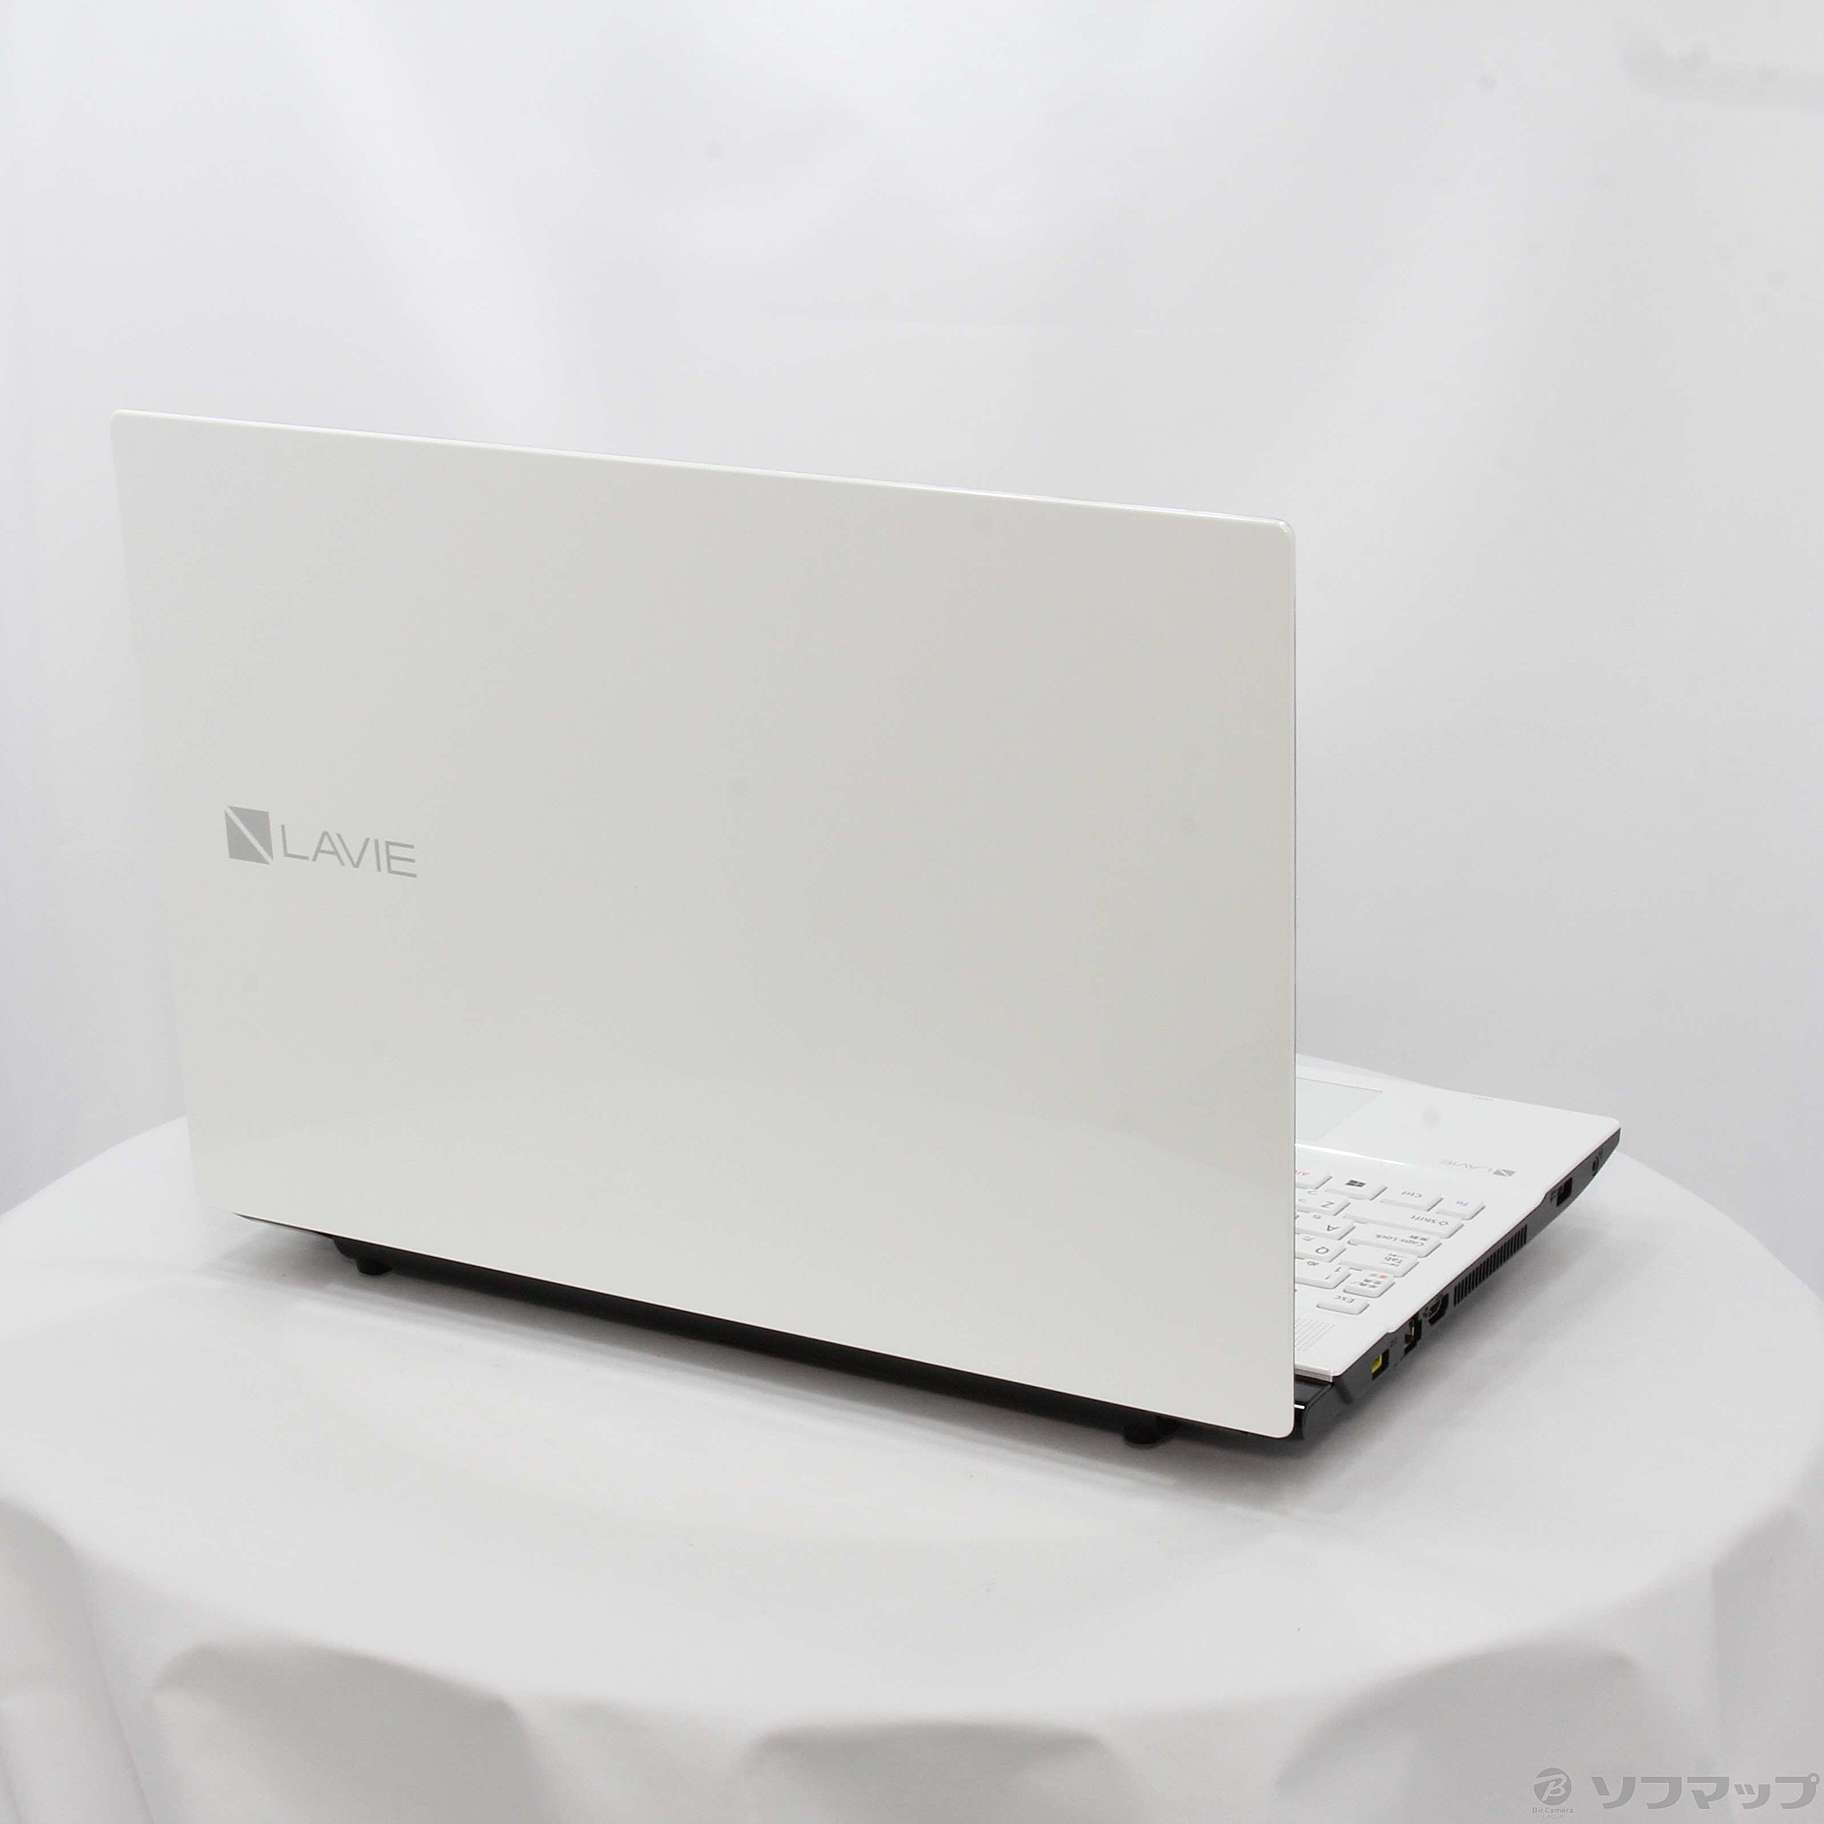 中古】LaVie Note Standard PC-NS350HAW-E3 クリスタルホワイト 〔NEC